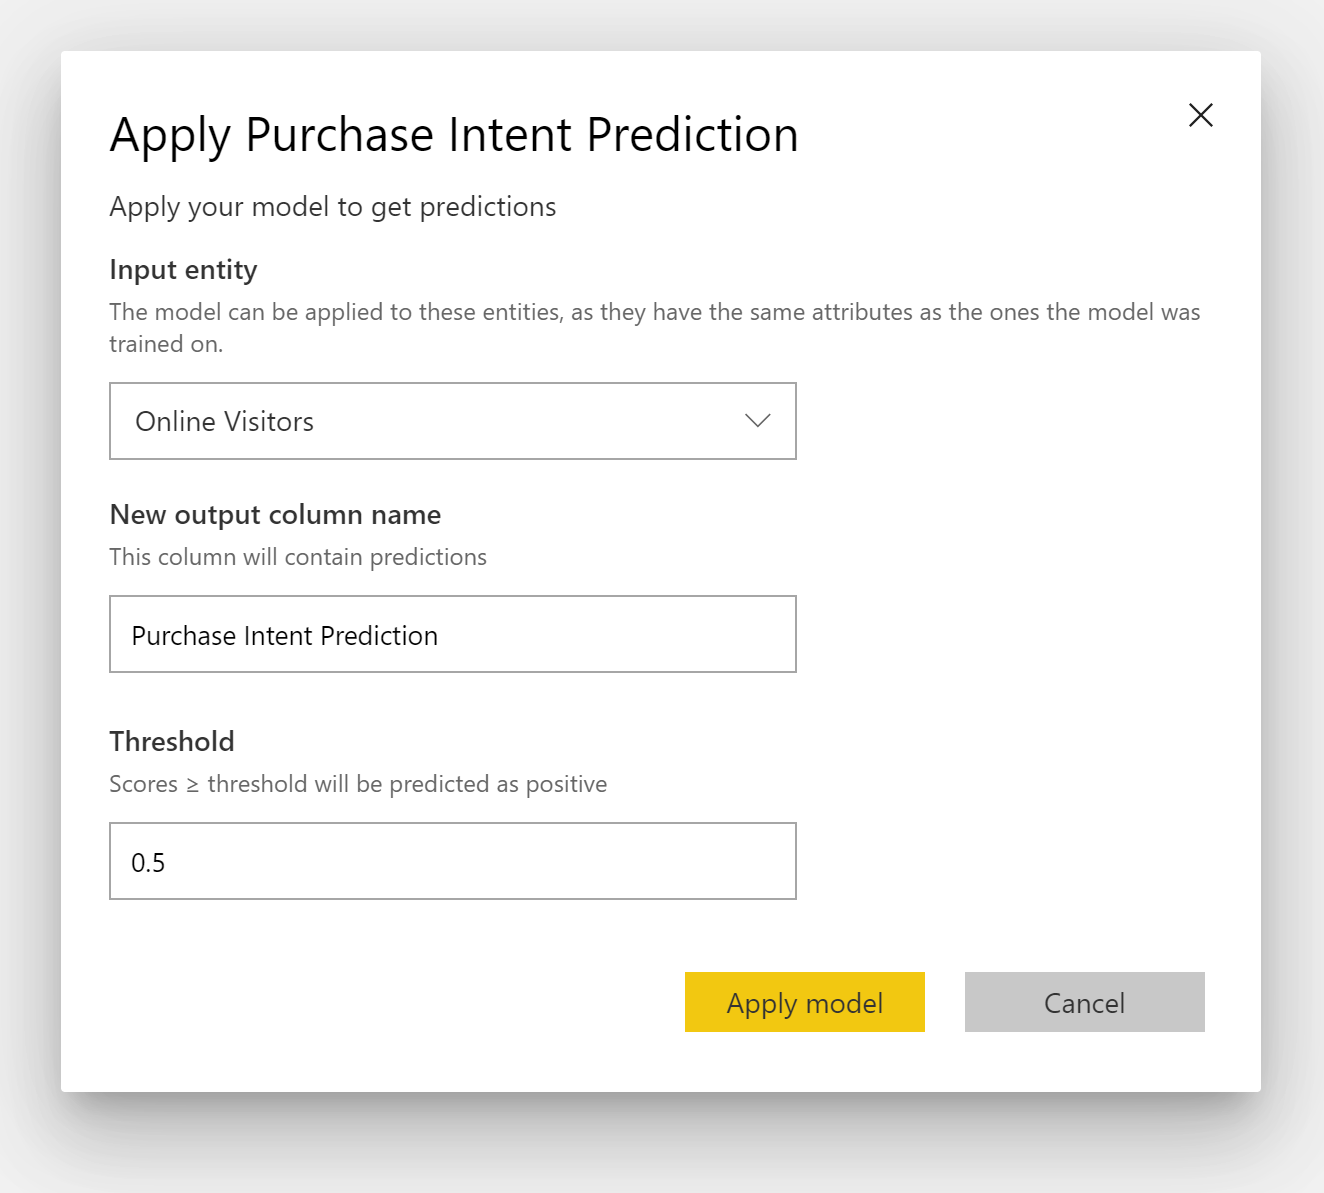 “应用购买意向预测”对话框的屏幕截图。